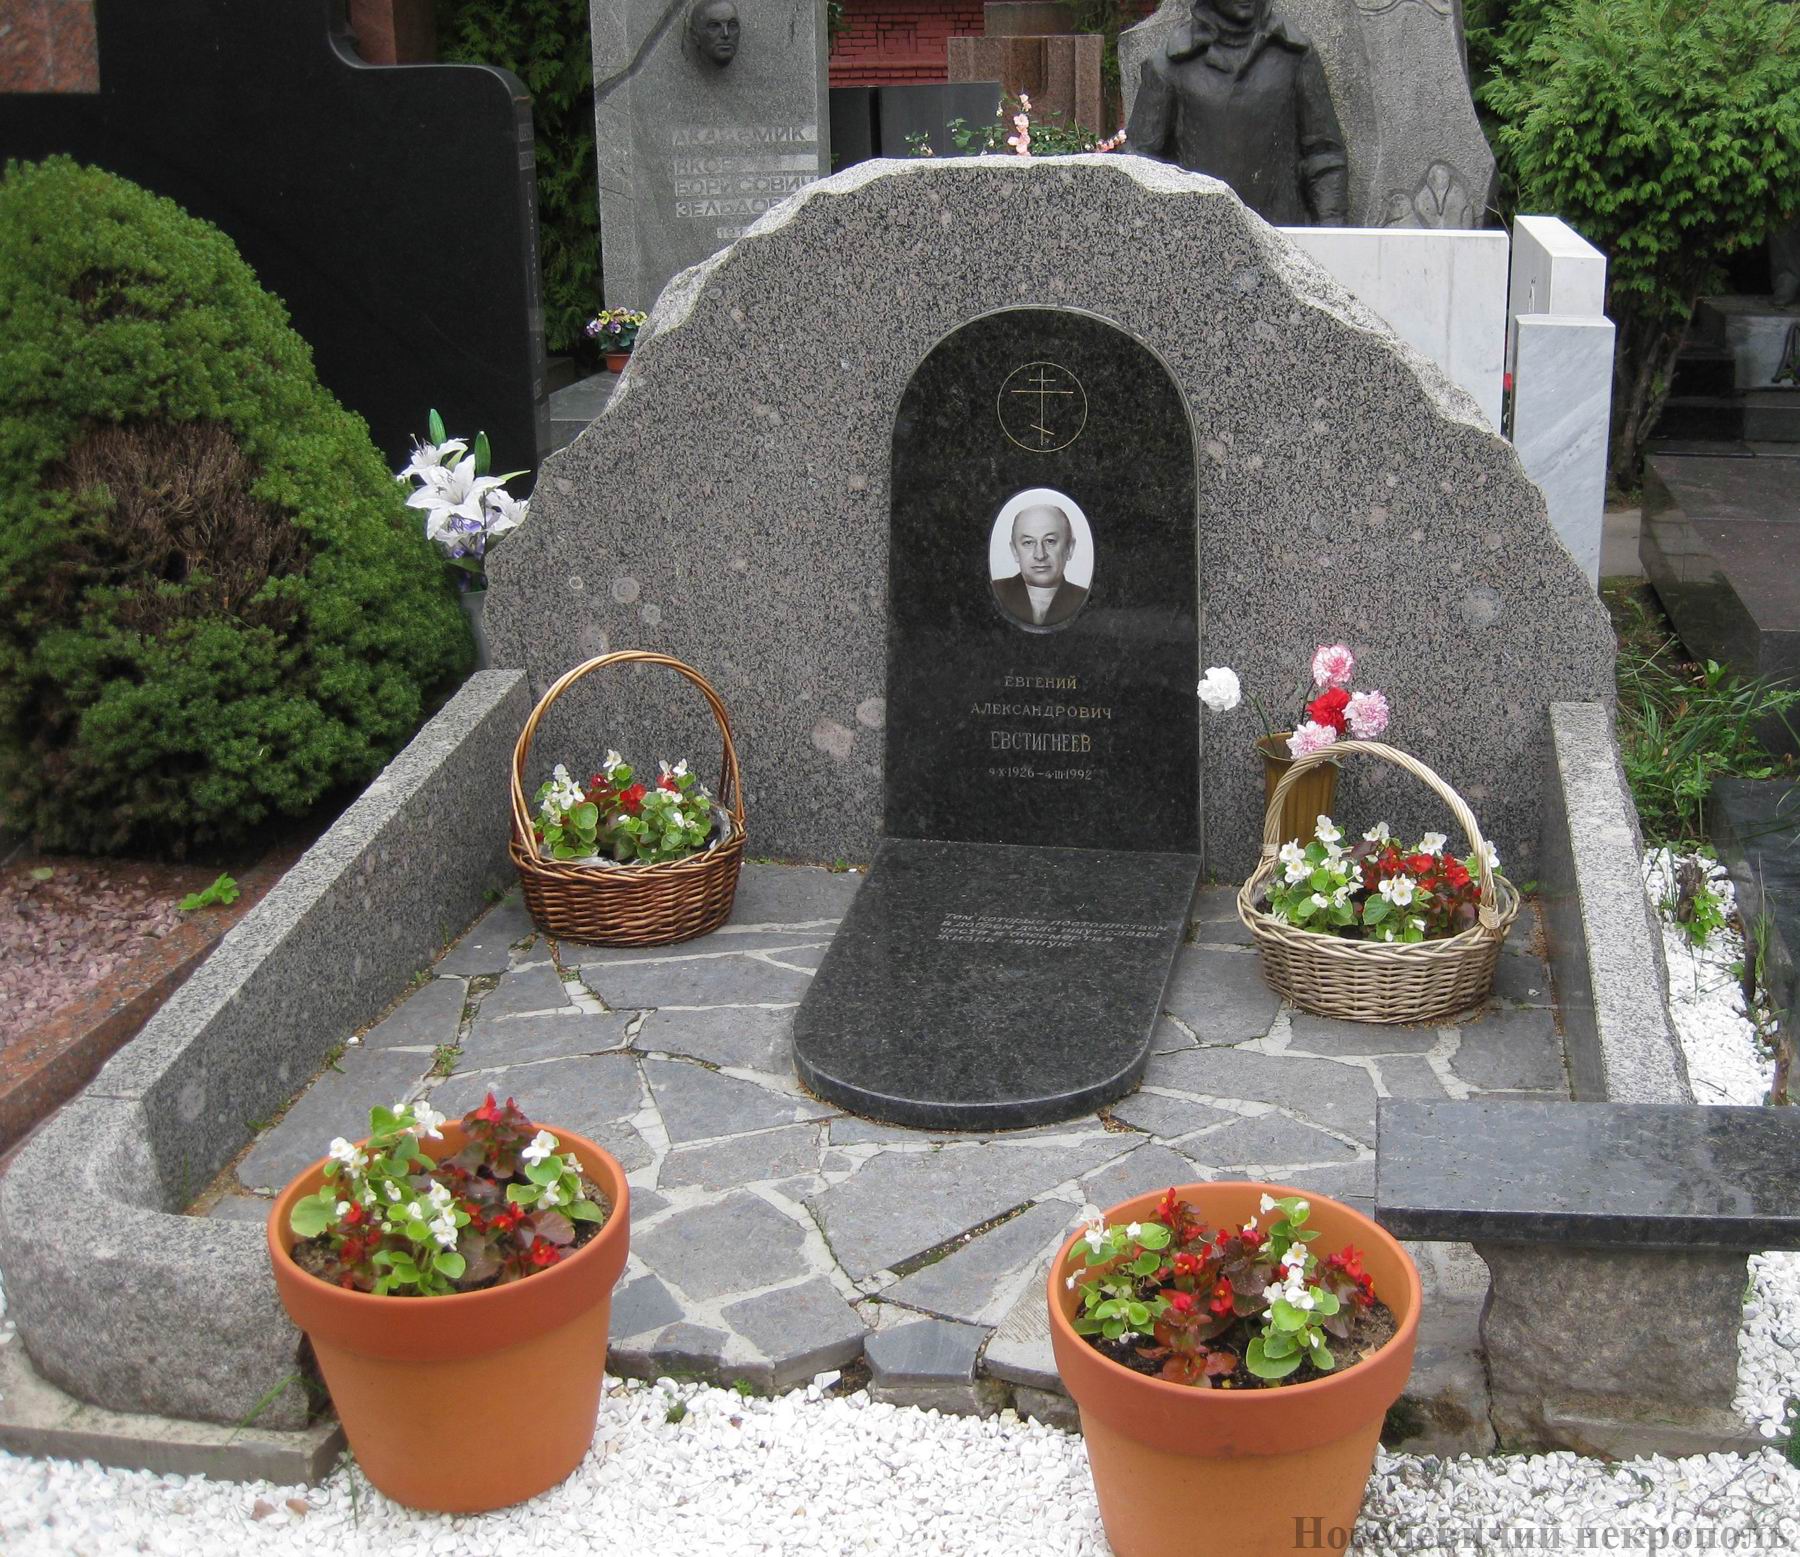 Памятник на могиле Евстигнеева Е.А. (1926-1992), ск. Е.Елагина, на Новодевичьем кладбище (10-6-18). Нажмите левую кнопку мыши, чтобы увидеть фрагмент памятника.